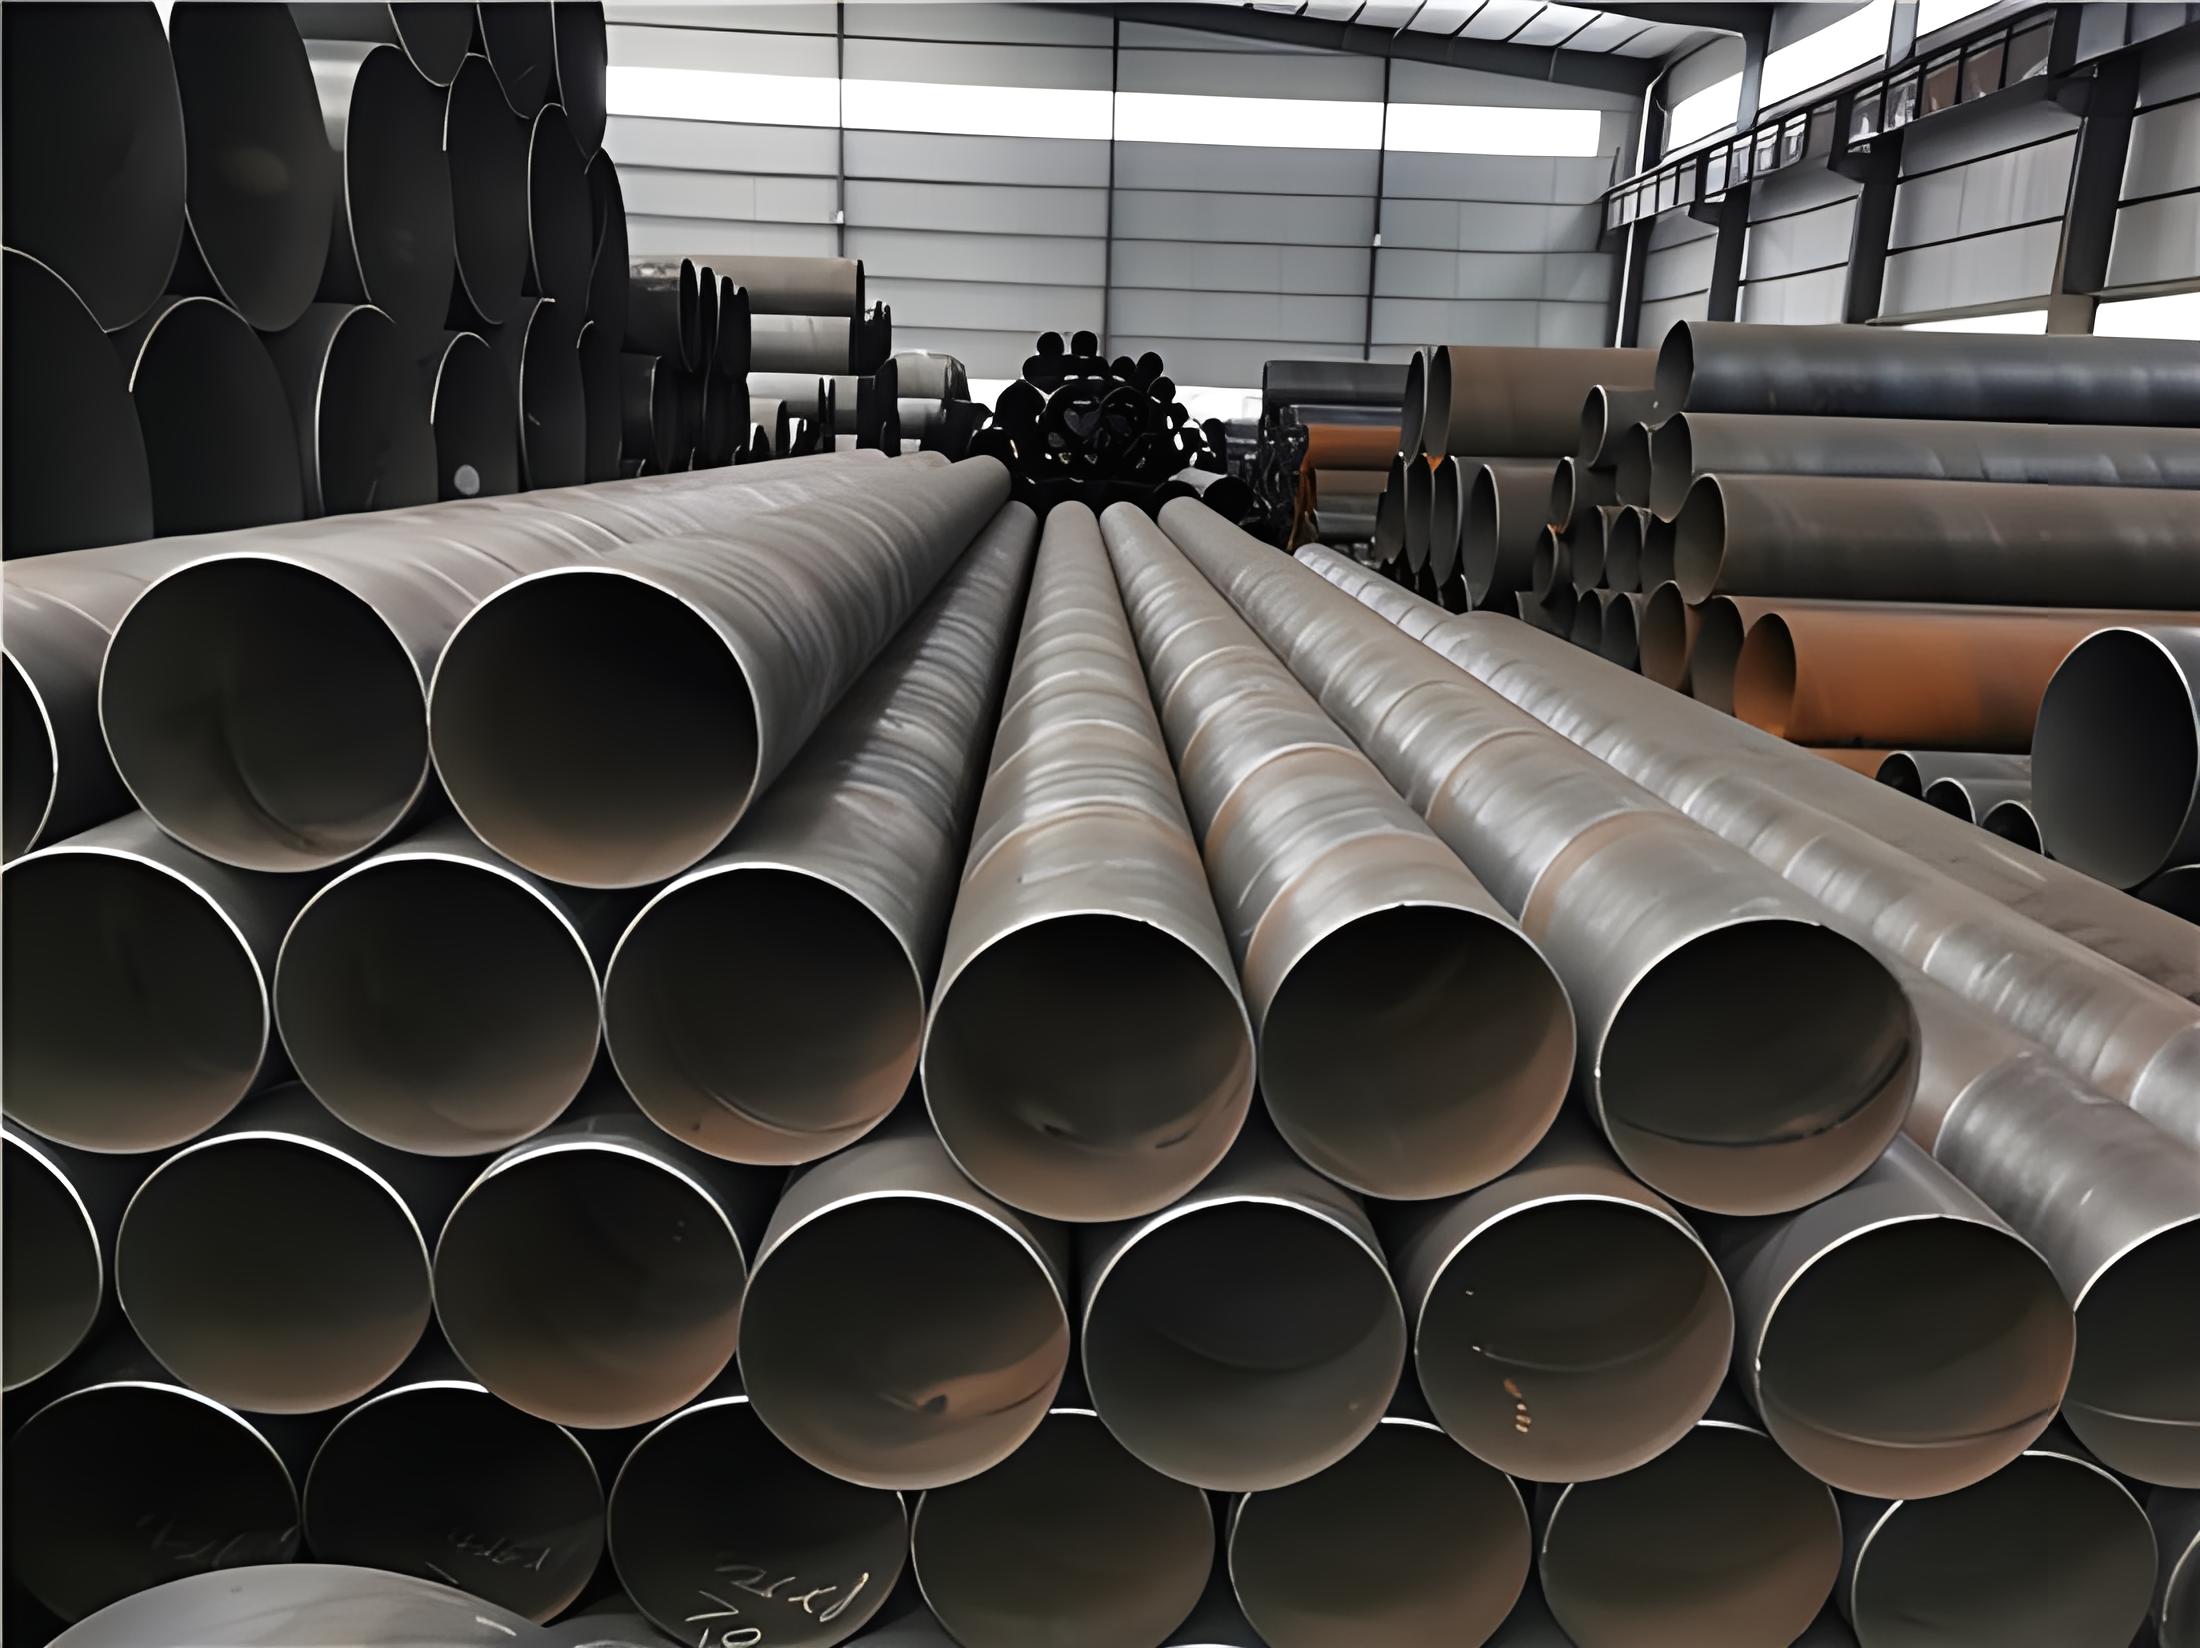 锡林郭勒螺旋钢管现代工业建设的坚实基石